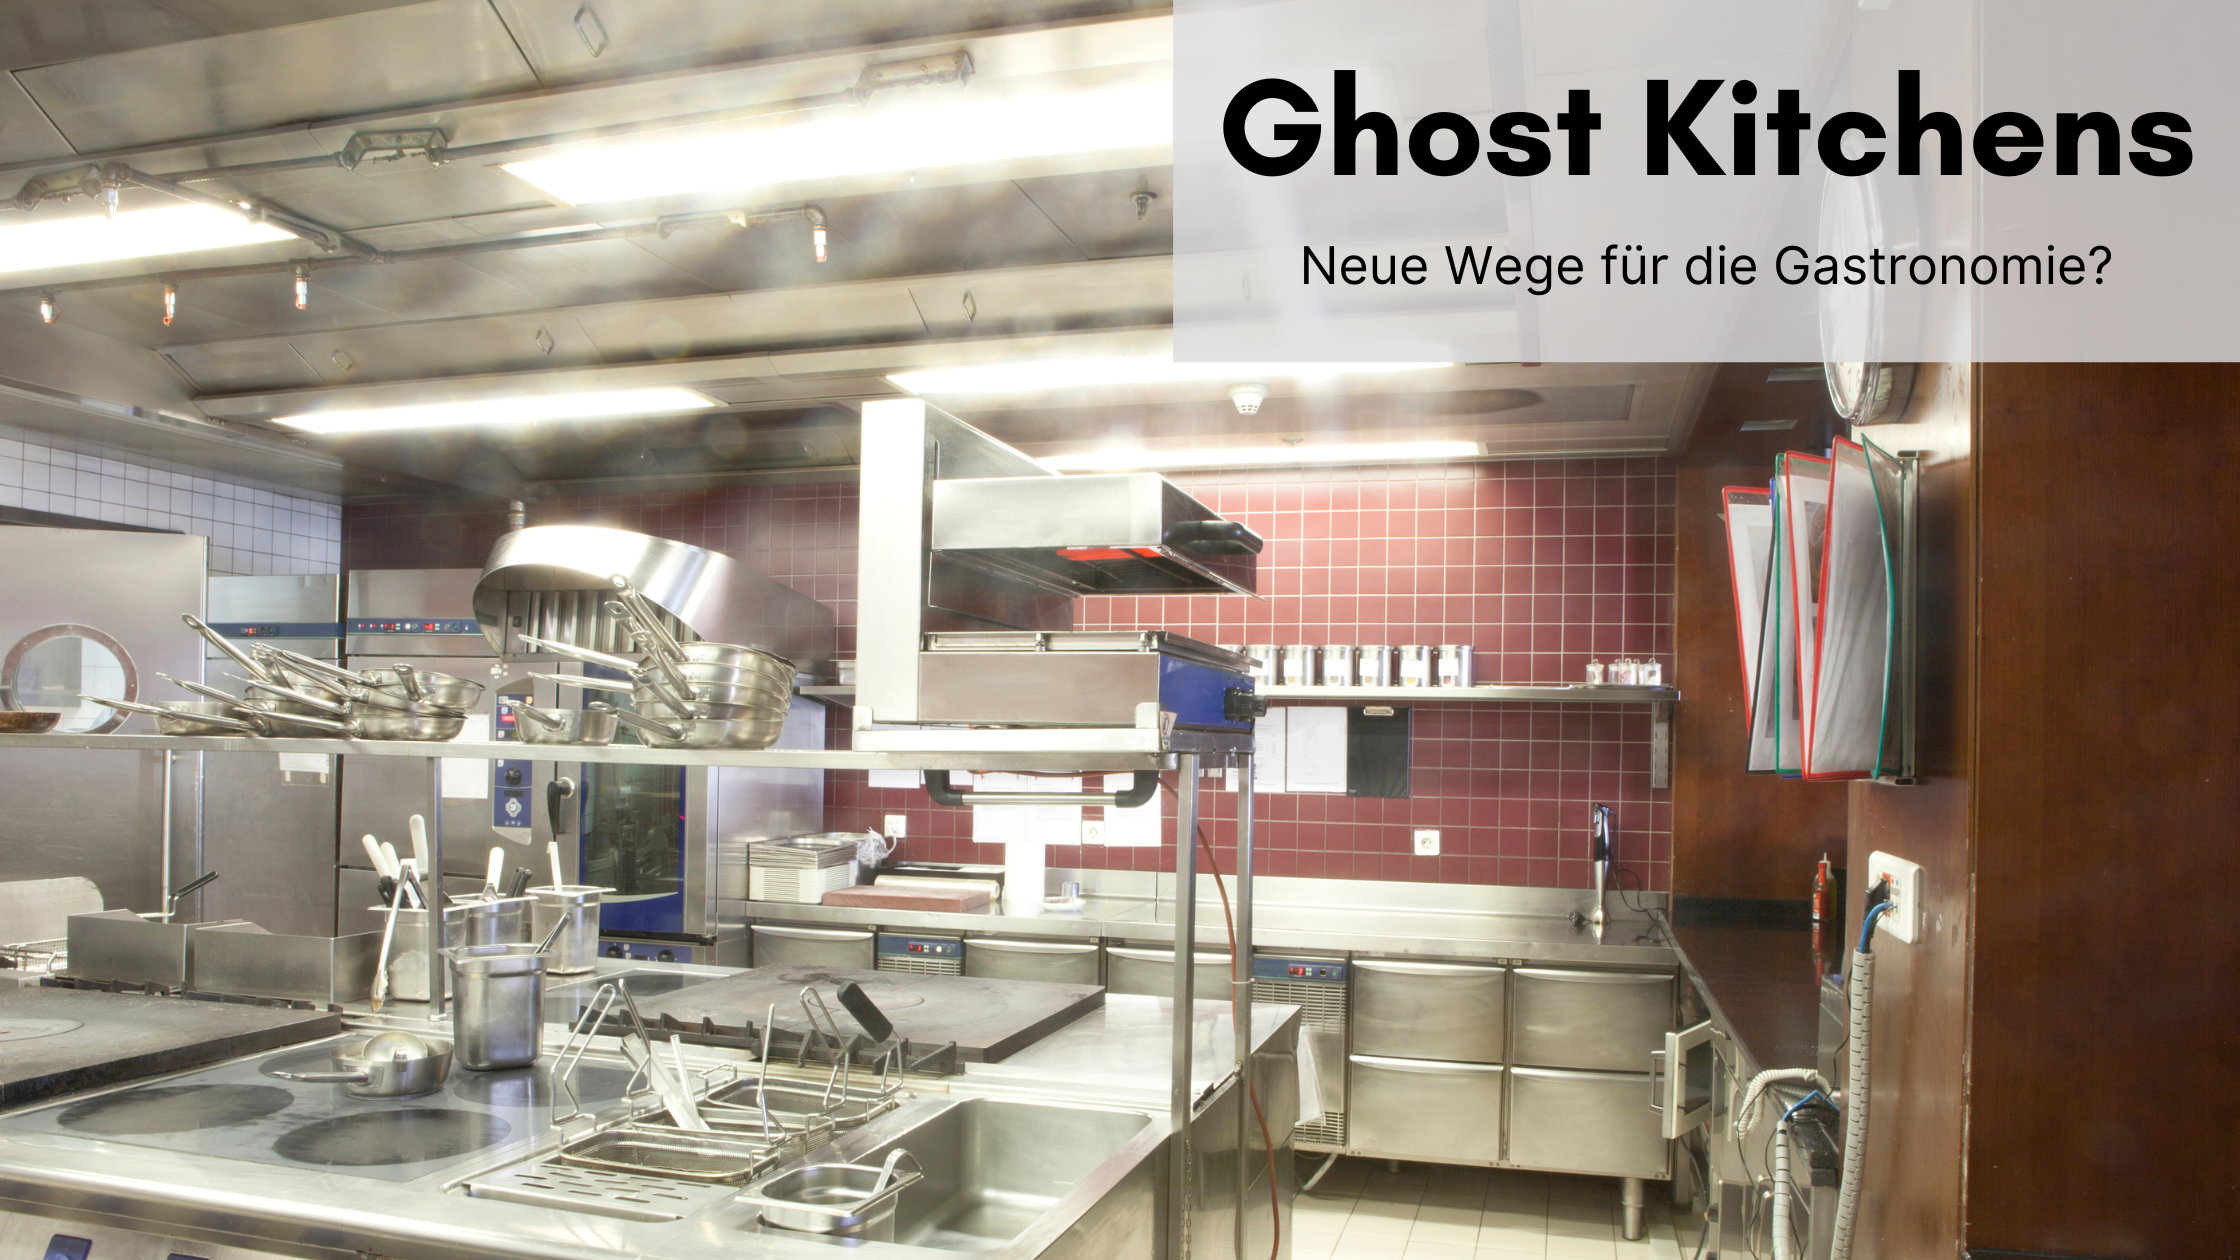 Ghost Kitchens - neue Wege für der Gastronomie?